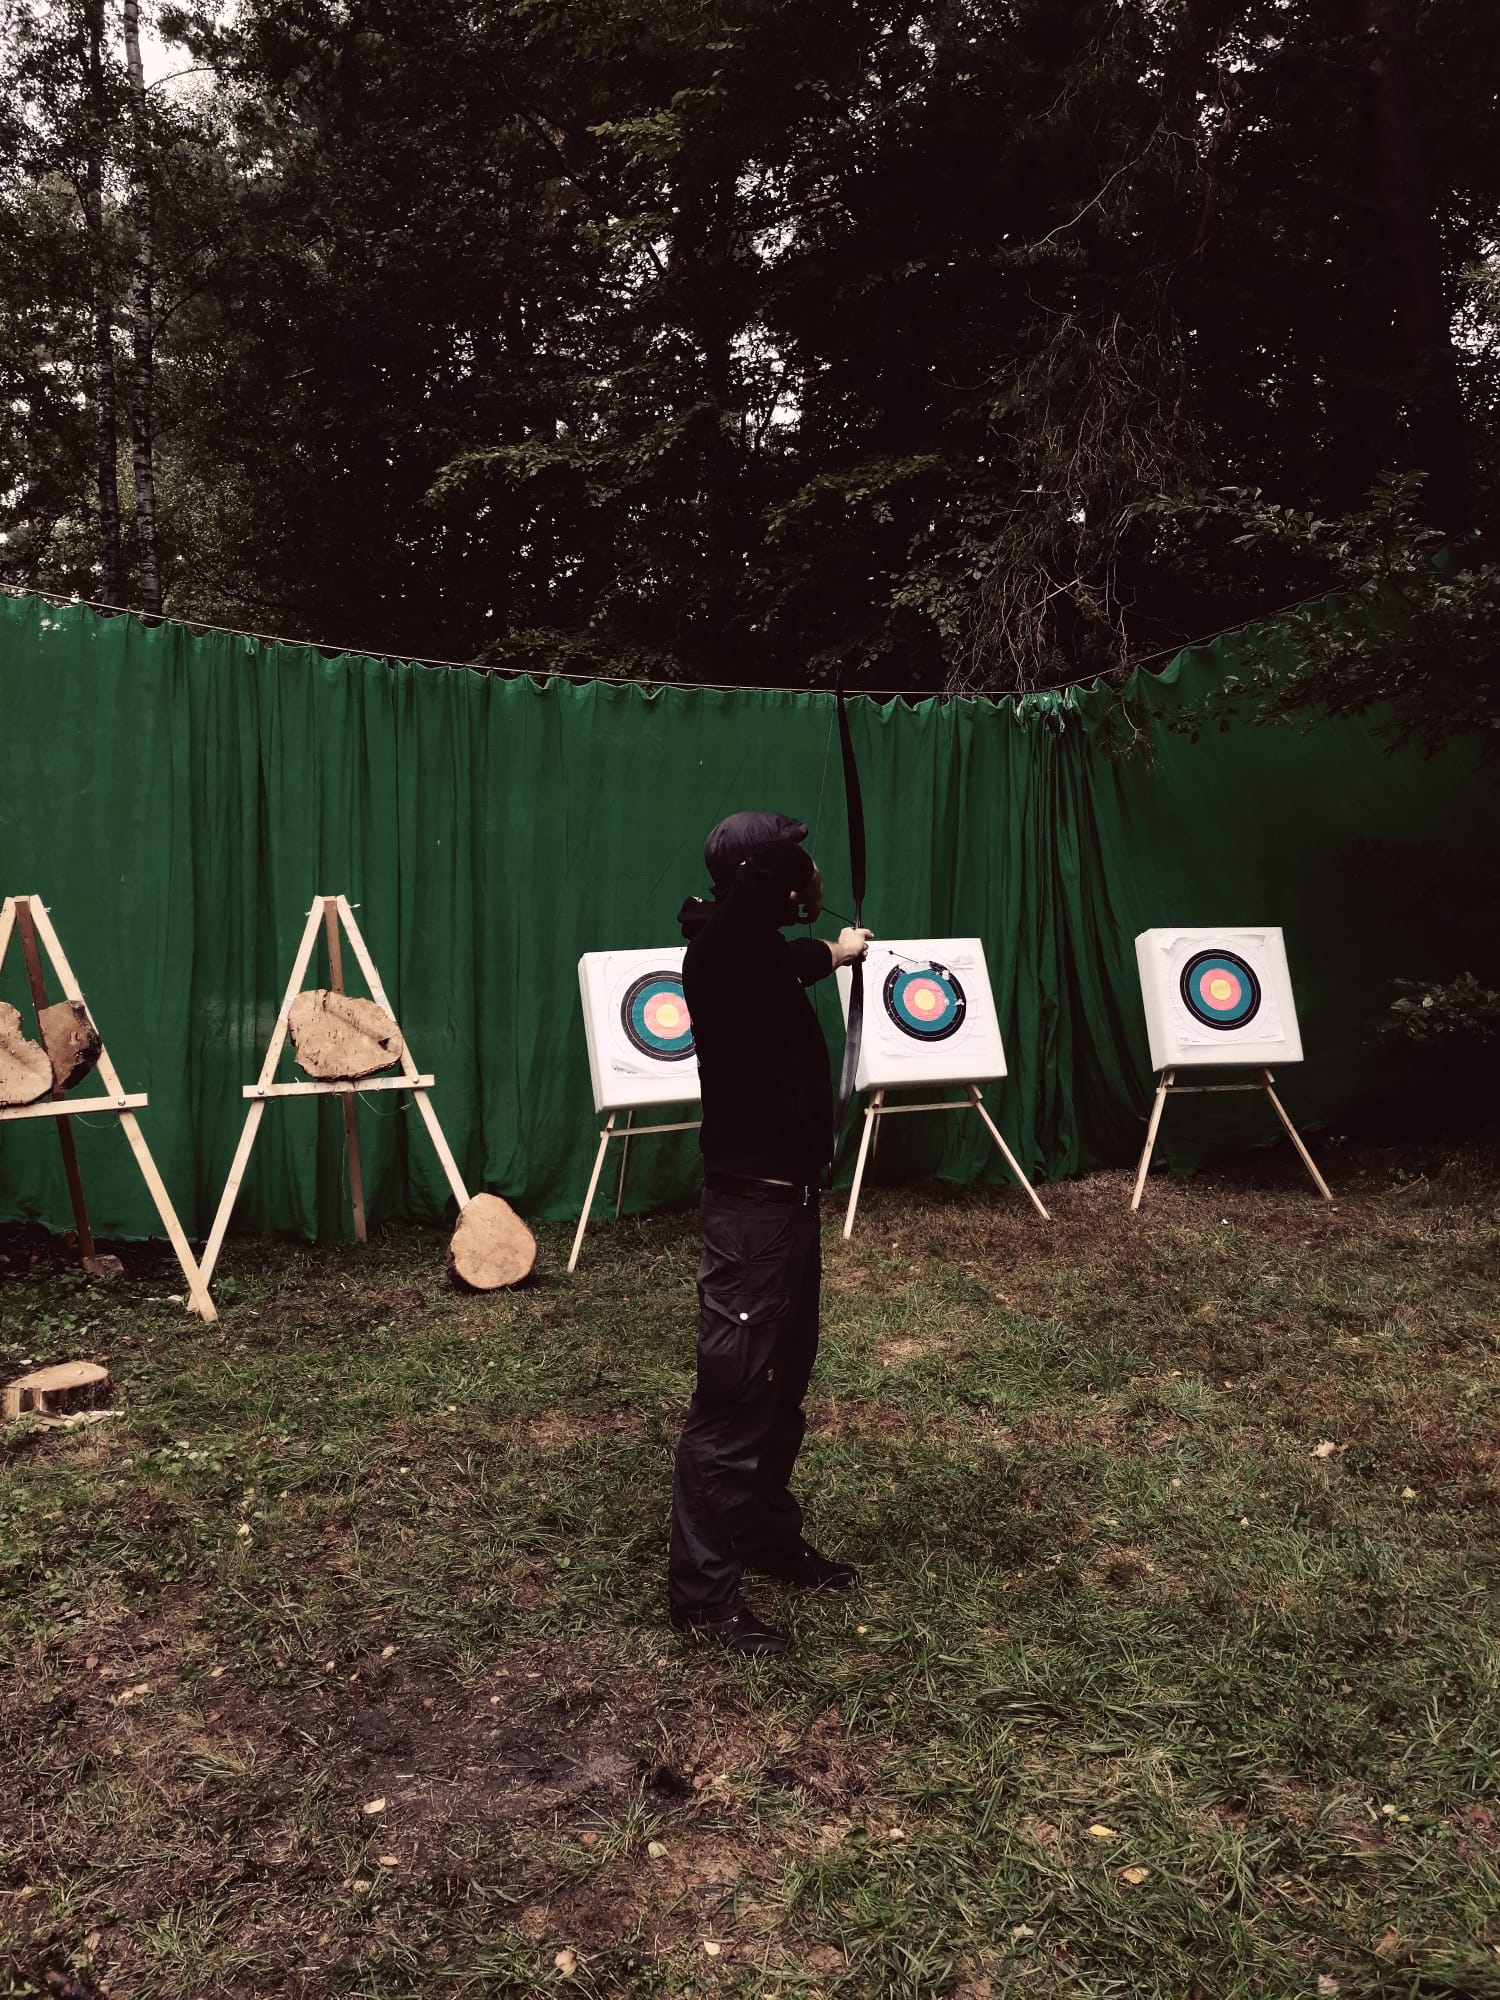 Mann in schwarzer Kleidung, den Rücken zum Betrachter gewandt, zielt mit einem Bogen auf eine Zielscheibe. Im Hintergrund sind mehrere Zielscheiben zu erkennen.